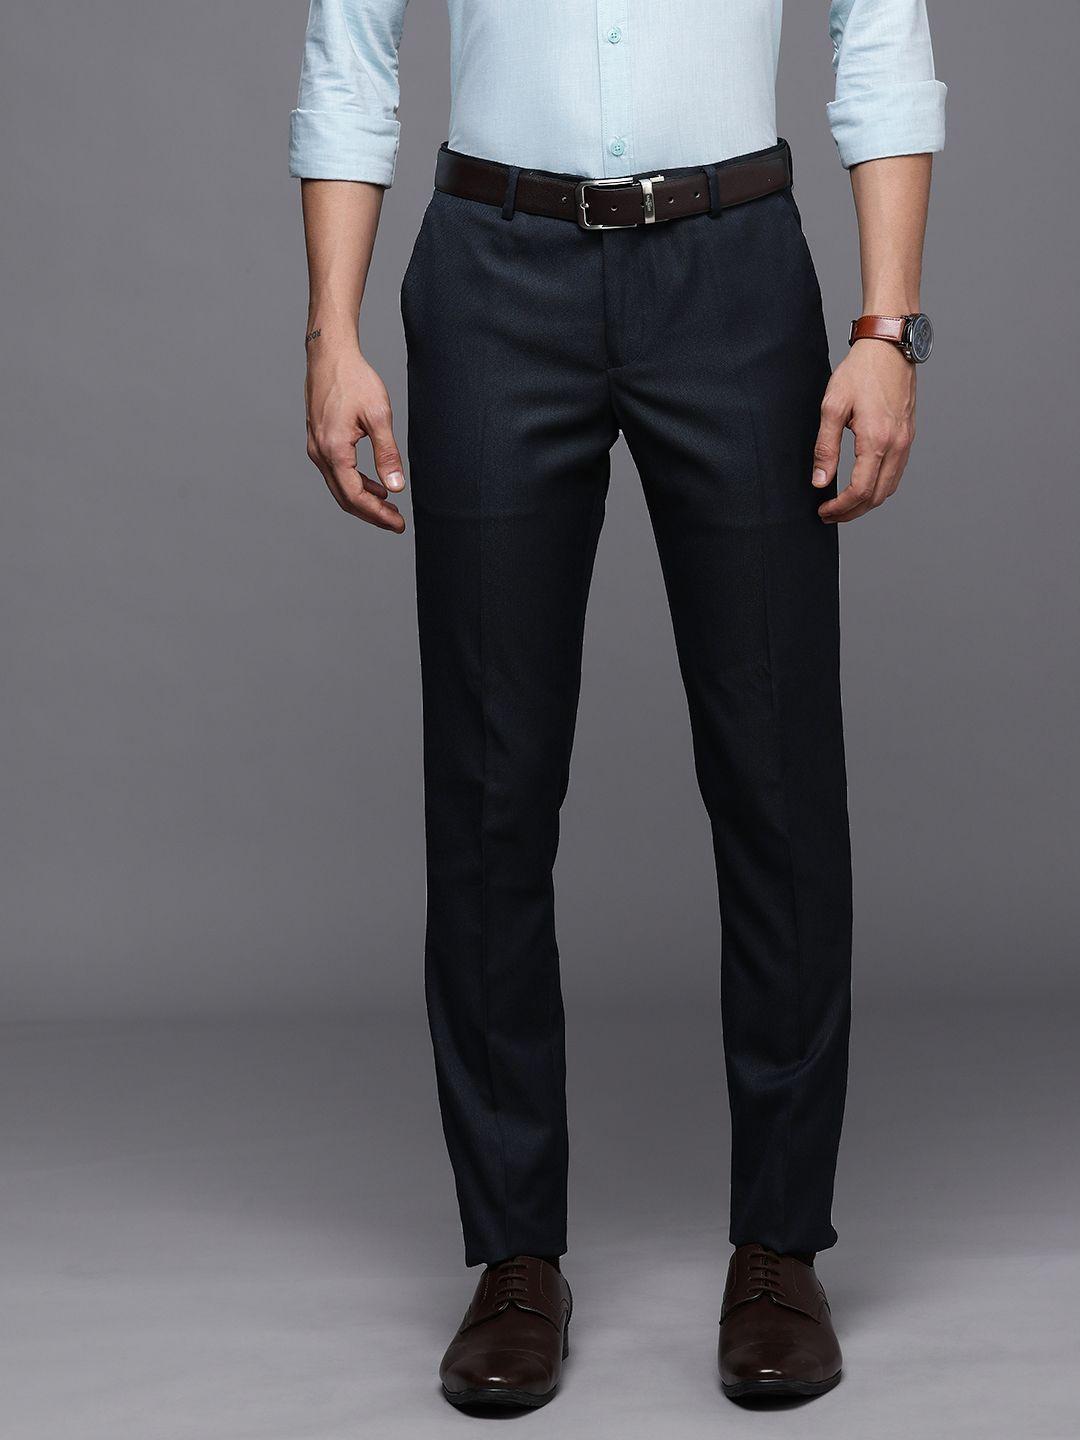 suitltd-men-navy-blue-solid-smart-slim-fit-trousers